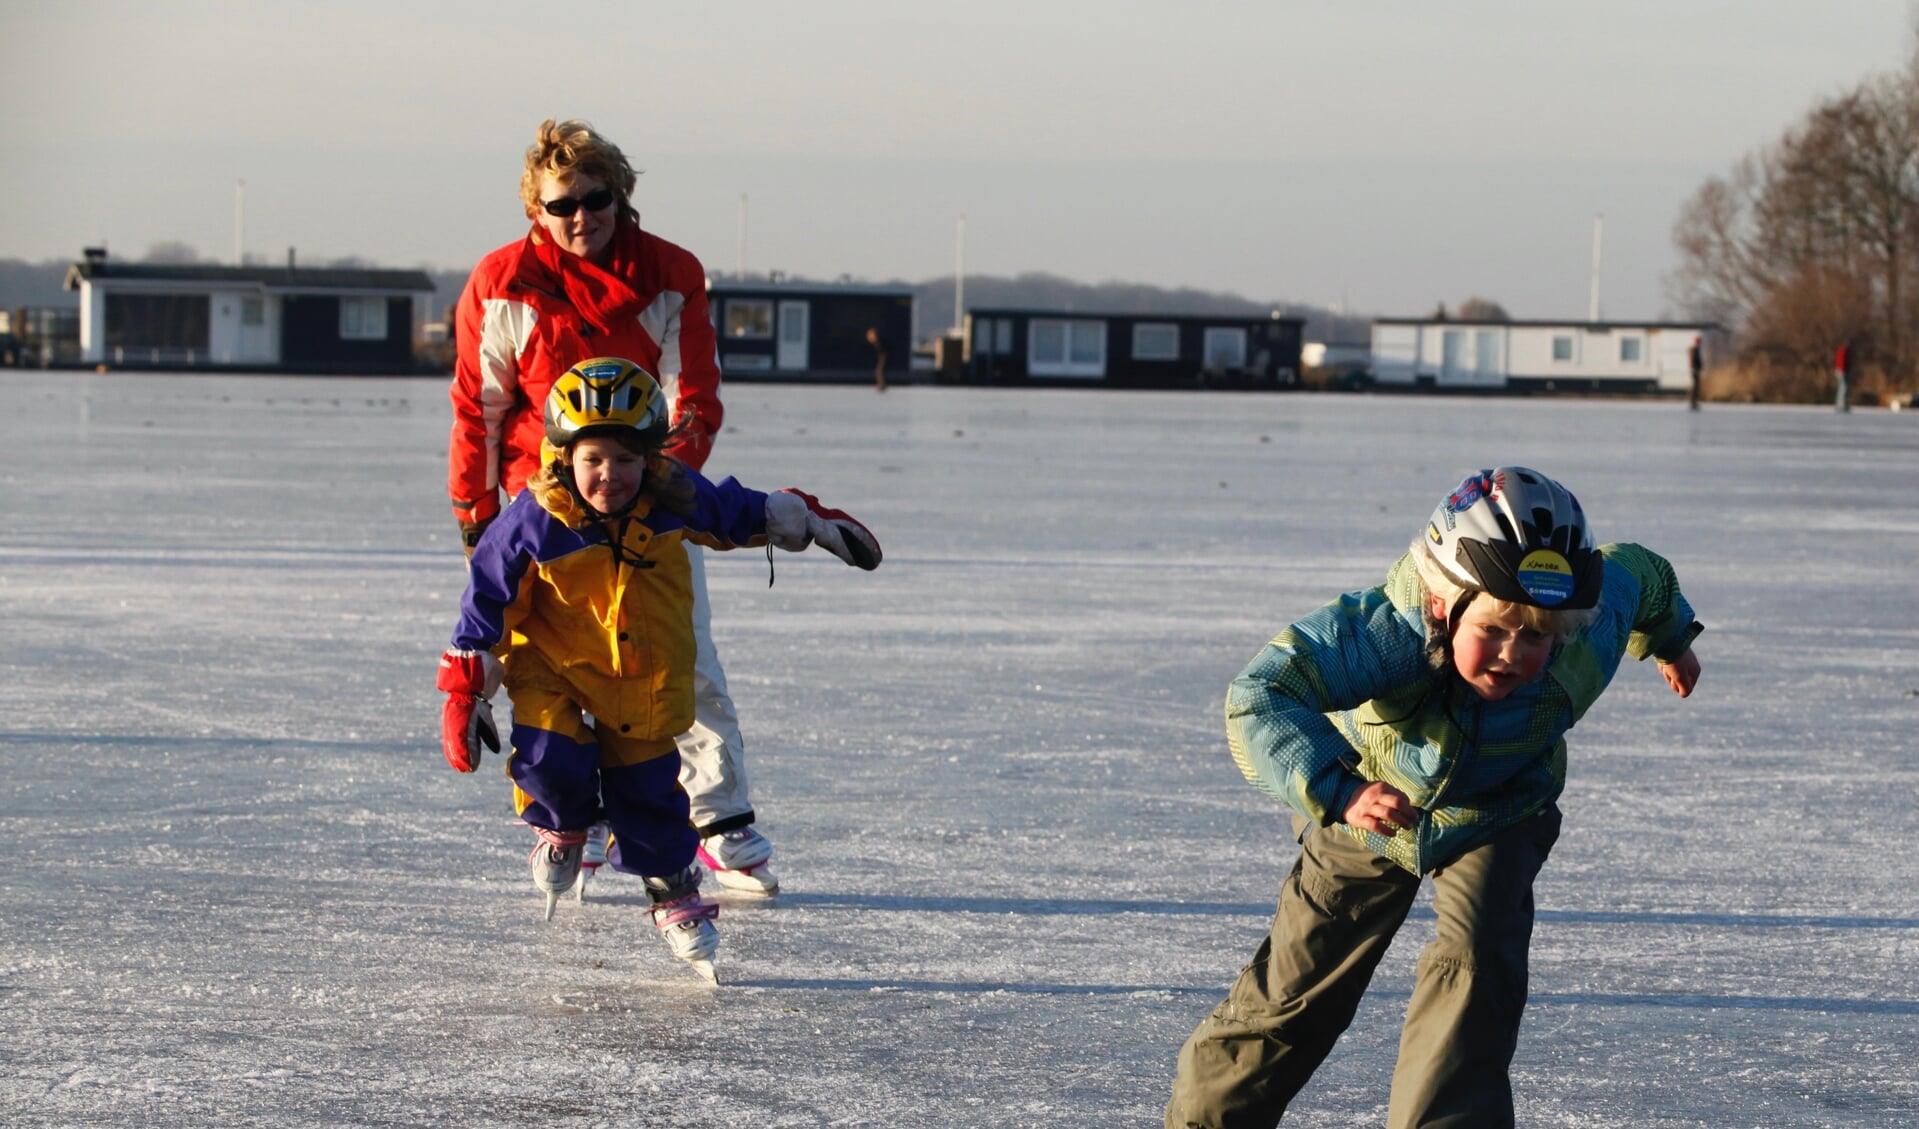 Xandra kon al op jonge leeftijd erg goed schaatsen. Hier sprint ze weg bij haar zusje en moeder.